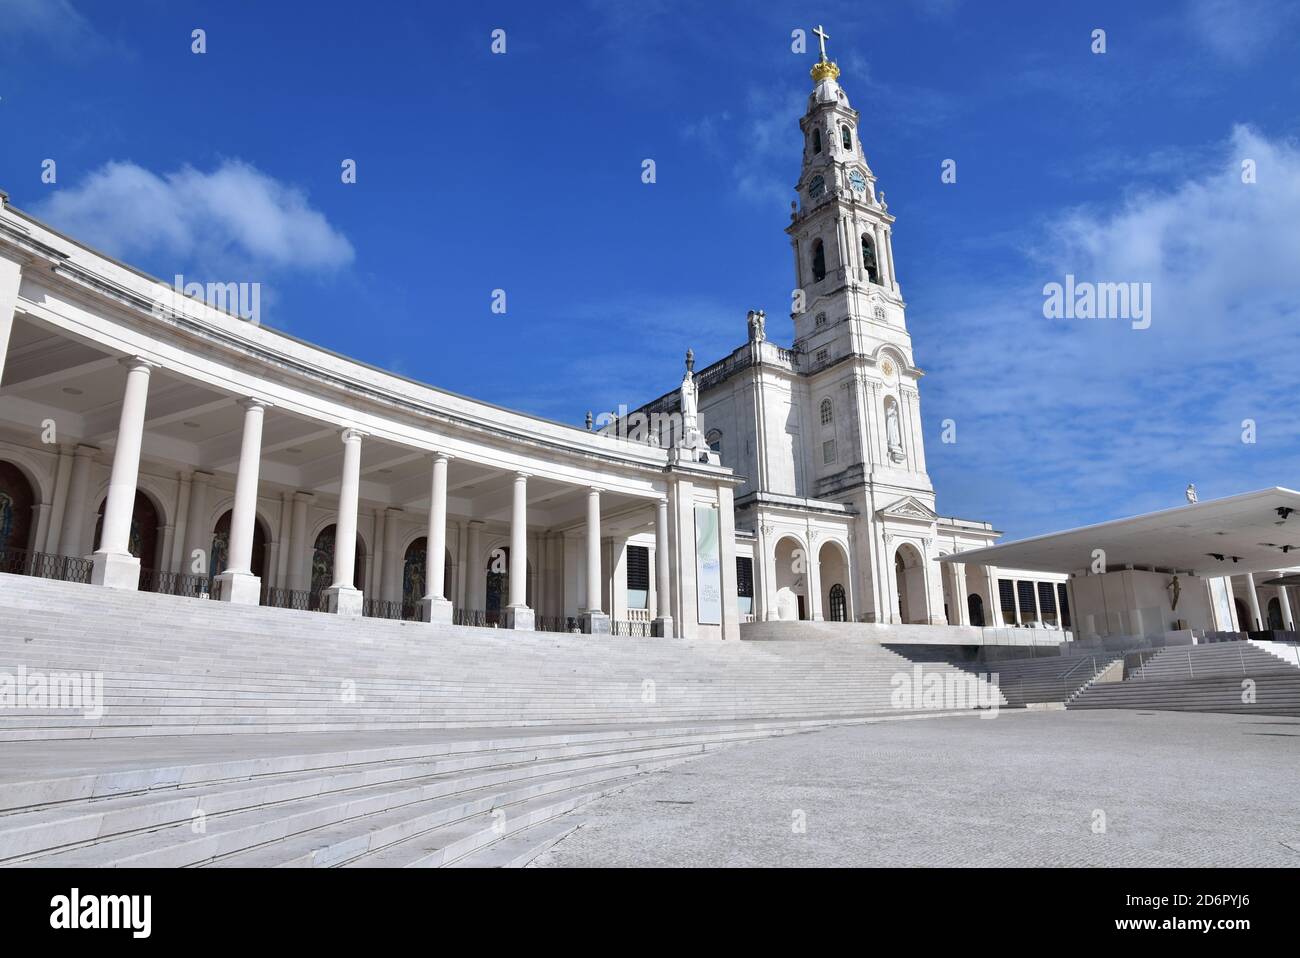 Portugal, die Basilika von Fatima ist eine Kirche im neobarocken Stil in der Marienheiligtum gebaut.Baum Kinder wurden hier Zeugen der Jungfrau appparition. Stockfoto